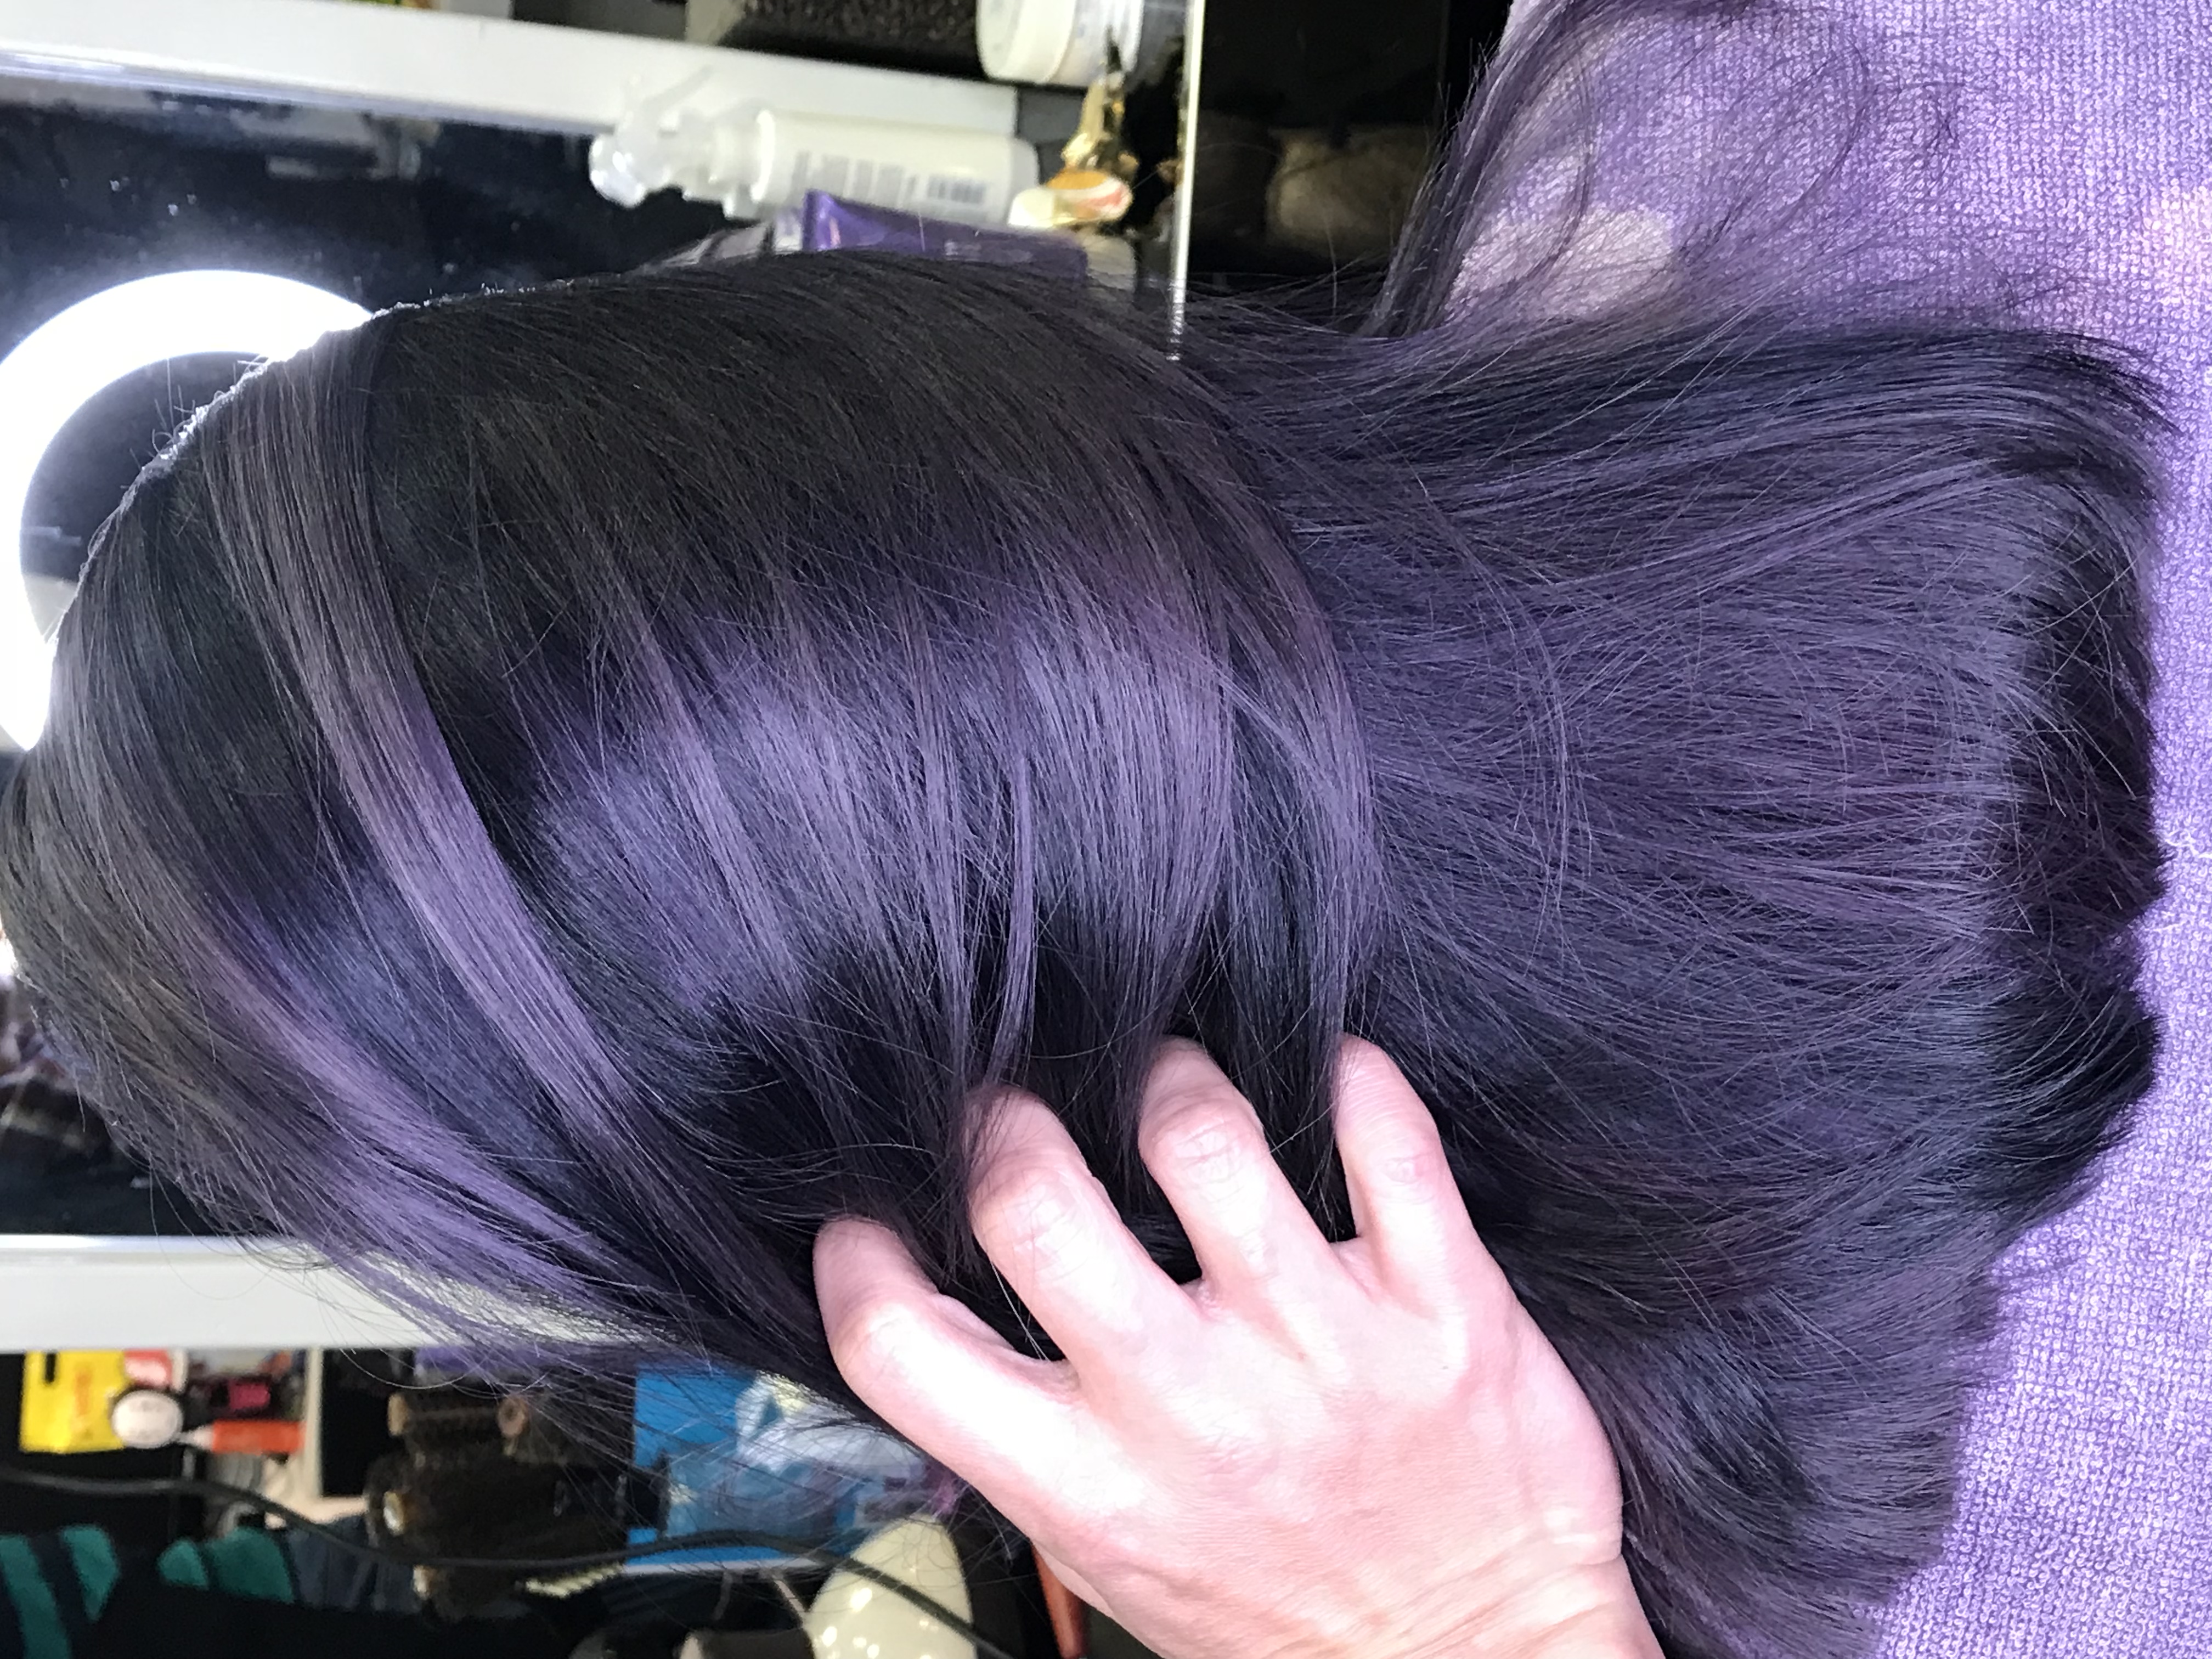 髮型作品參考:灰藍灰紫混合